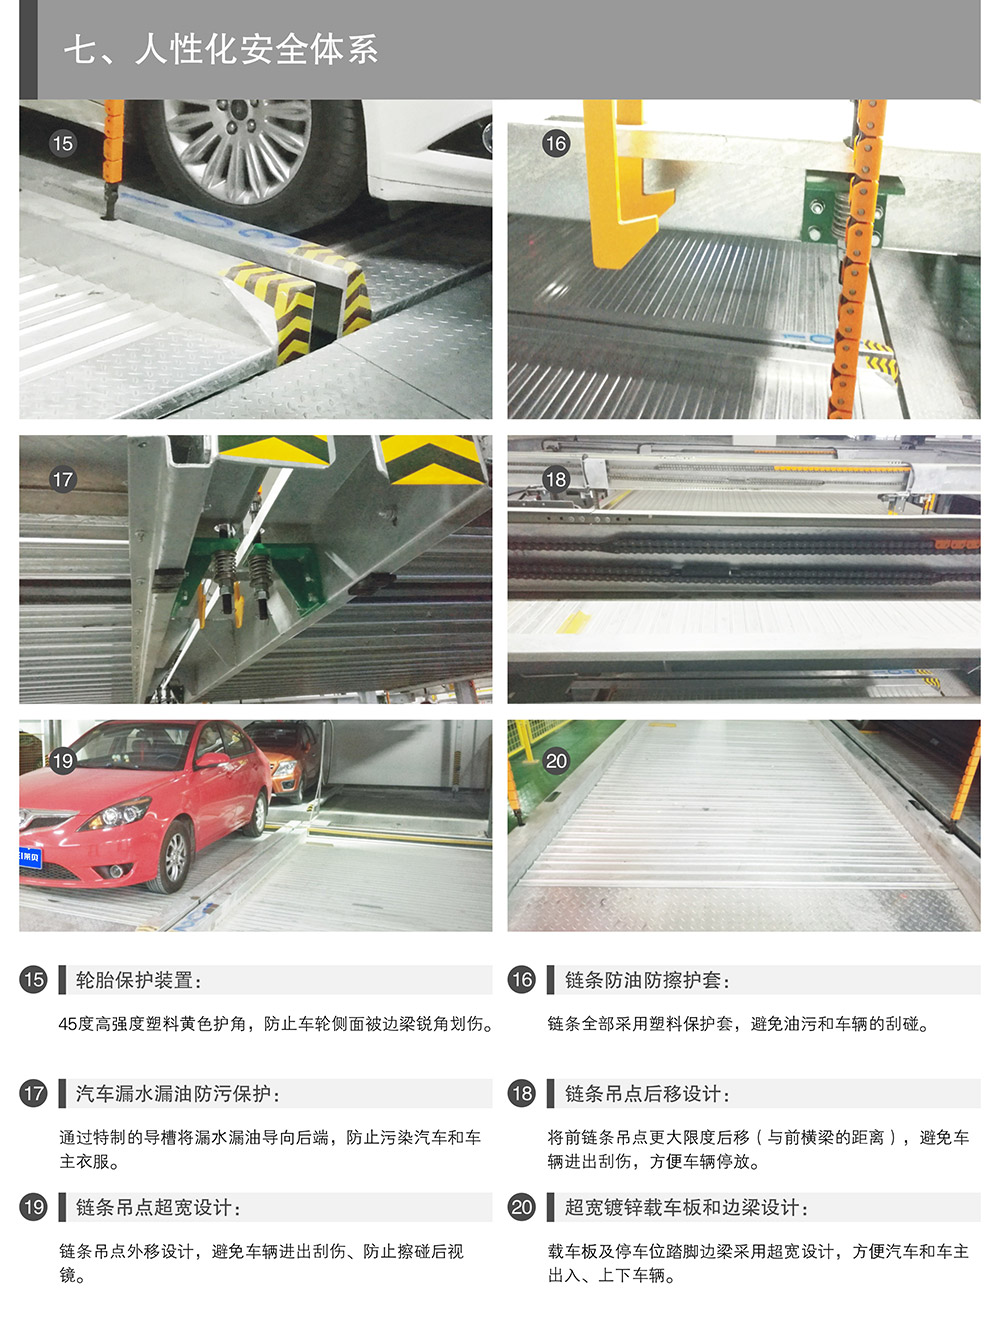 成都重庆PSH升降横移停车设备人性化安全体系.jpg